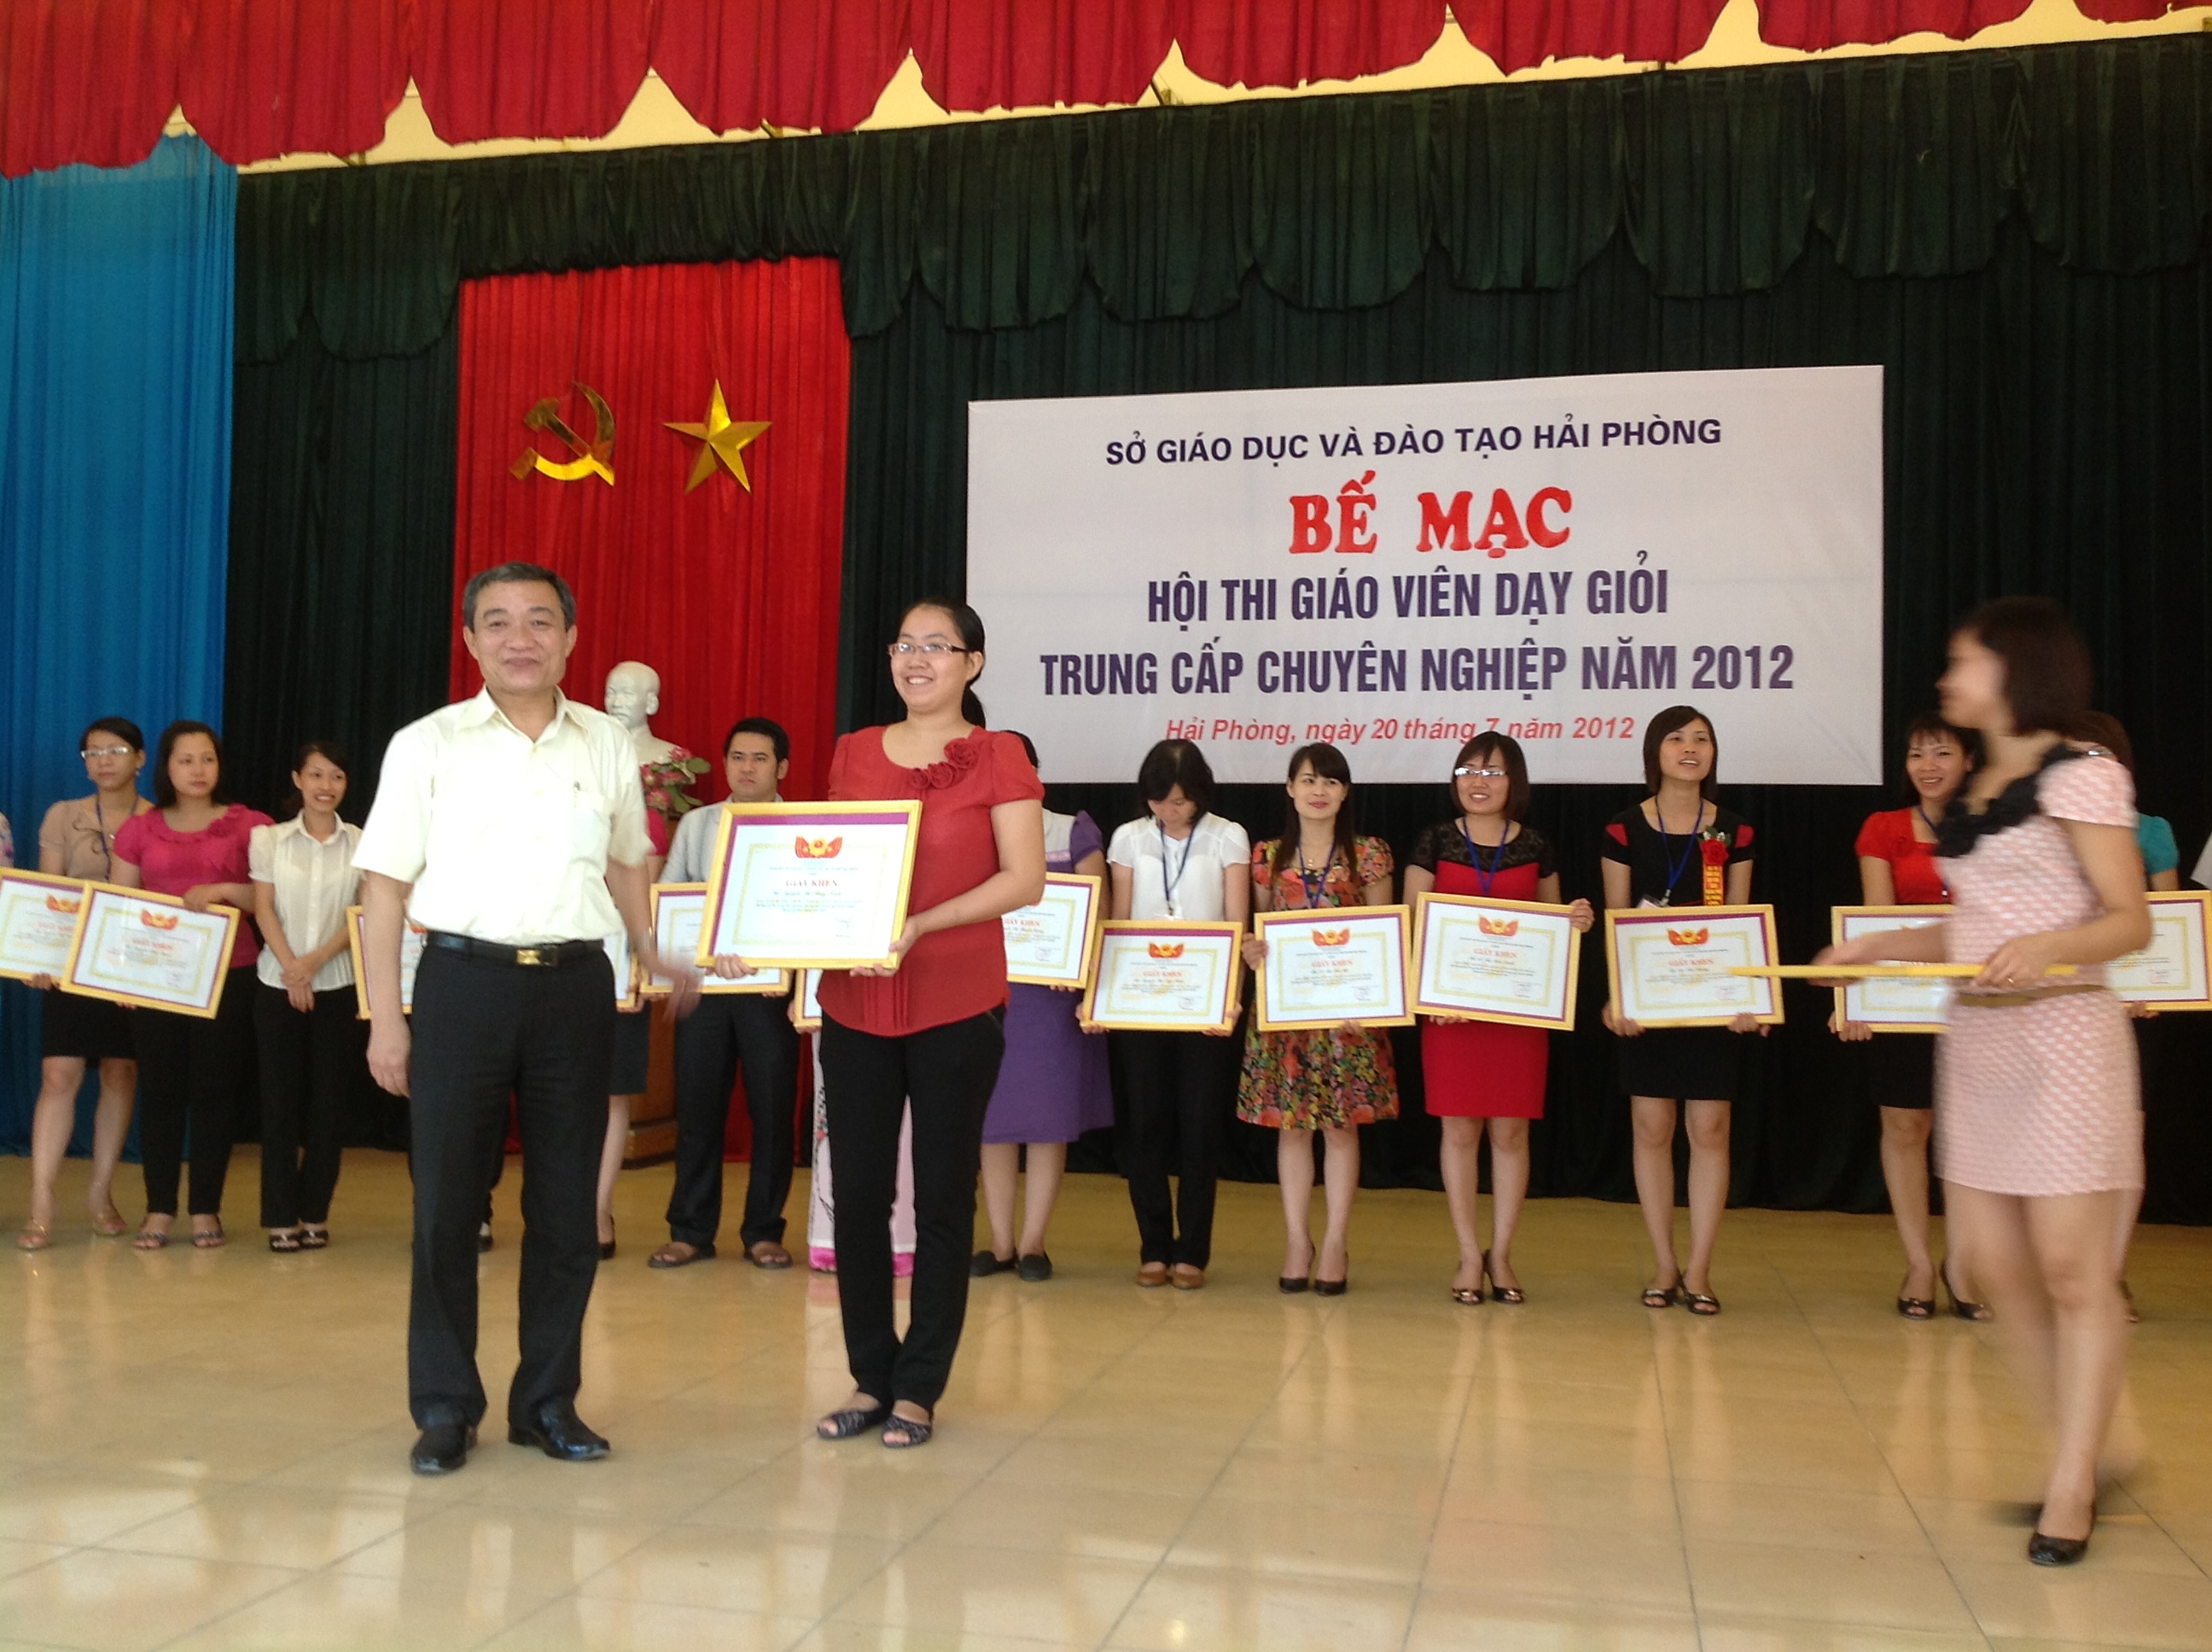 Giáo viên Nguyễn Thùy Ninh - Trung tâm đào tạo kế toán VAT đạt giải giáo viên dạy giỏi năm 2012